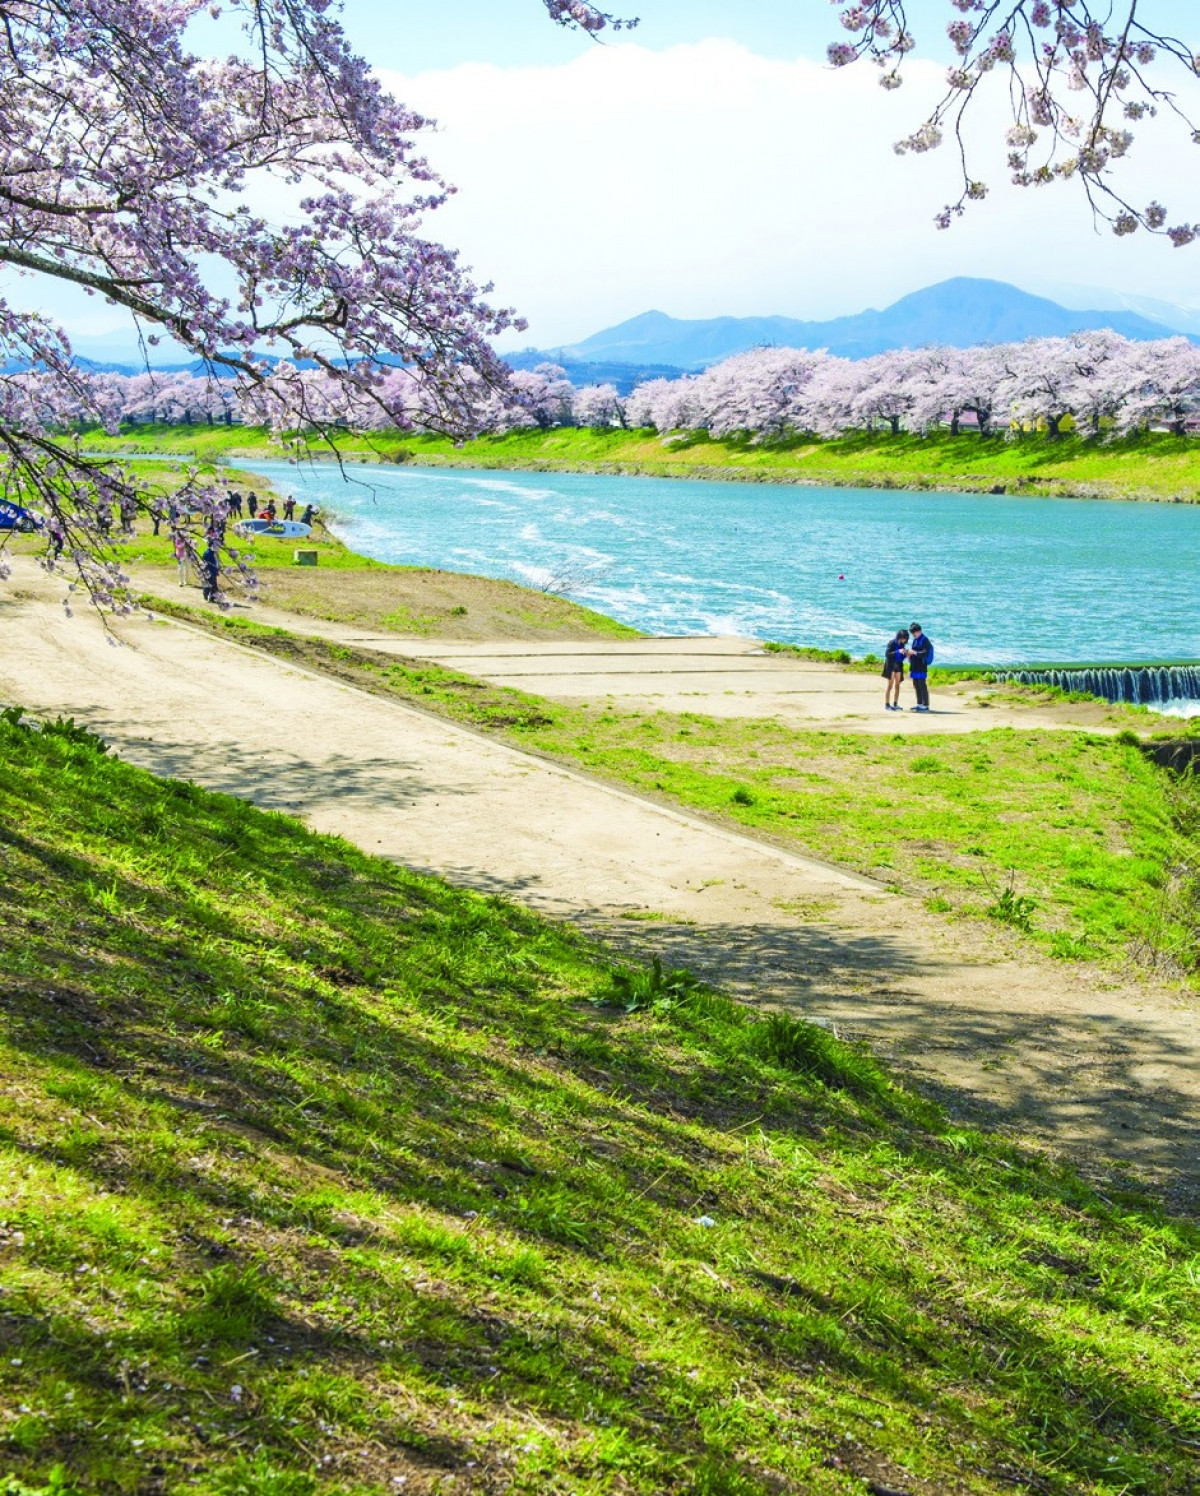 Senbonzakura nằm bên bờ sông Natsui là điểm tham quan nổi tiếng mà du khách có thể đến tản bộ và ngắm hoa anh đào dọc con đường ven sông. Ban đêm khi các cây hoa anh đào được thắp sáng lấp lánh cũng tạo nên cảnh tượng vô cùng hấp dẫn.